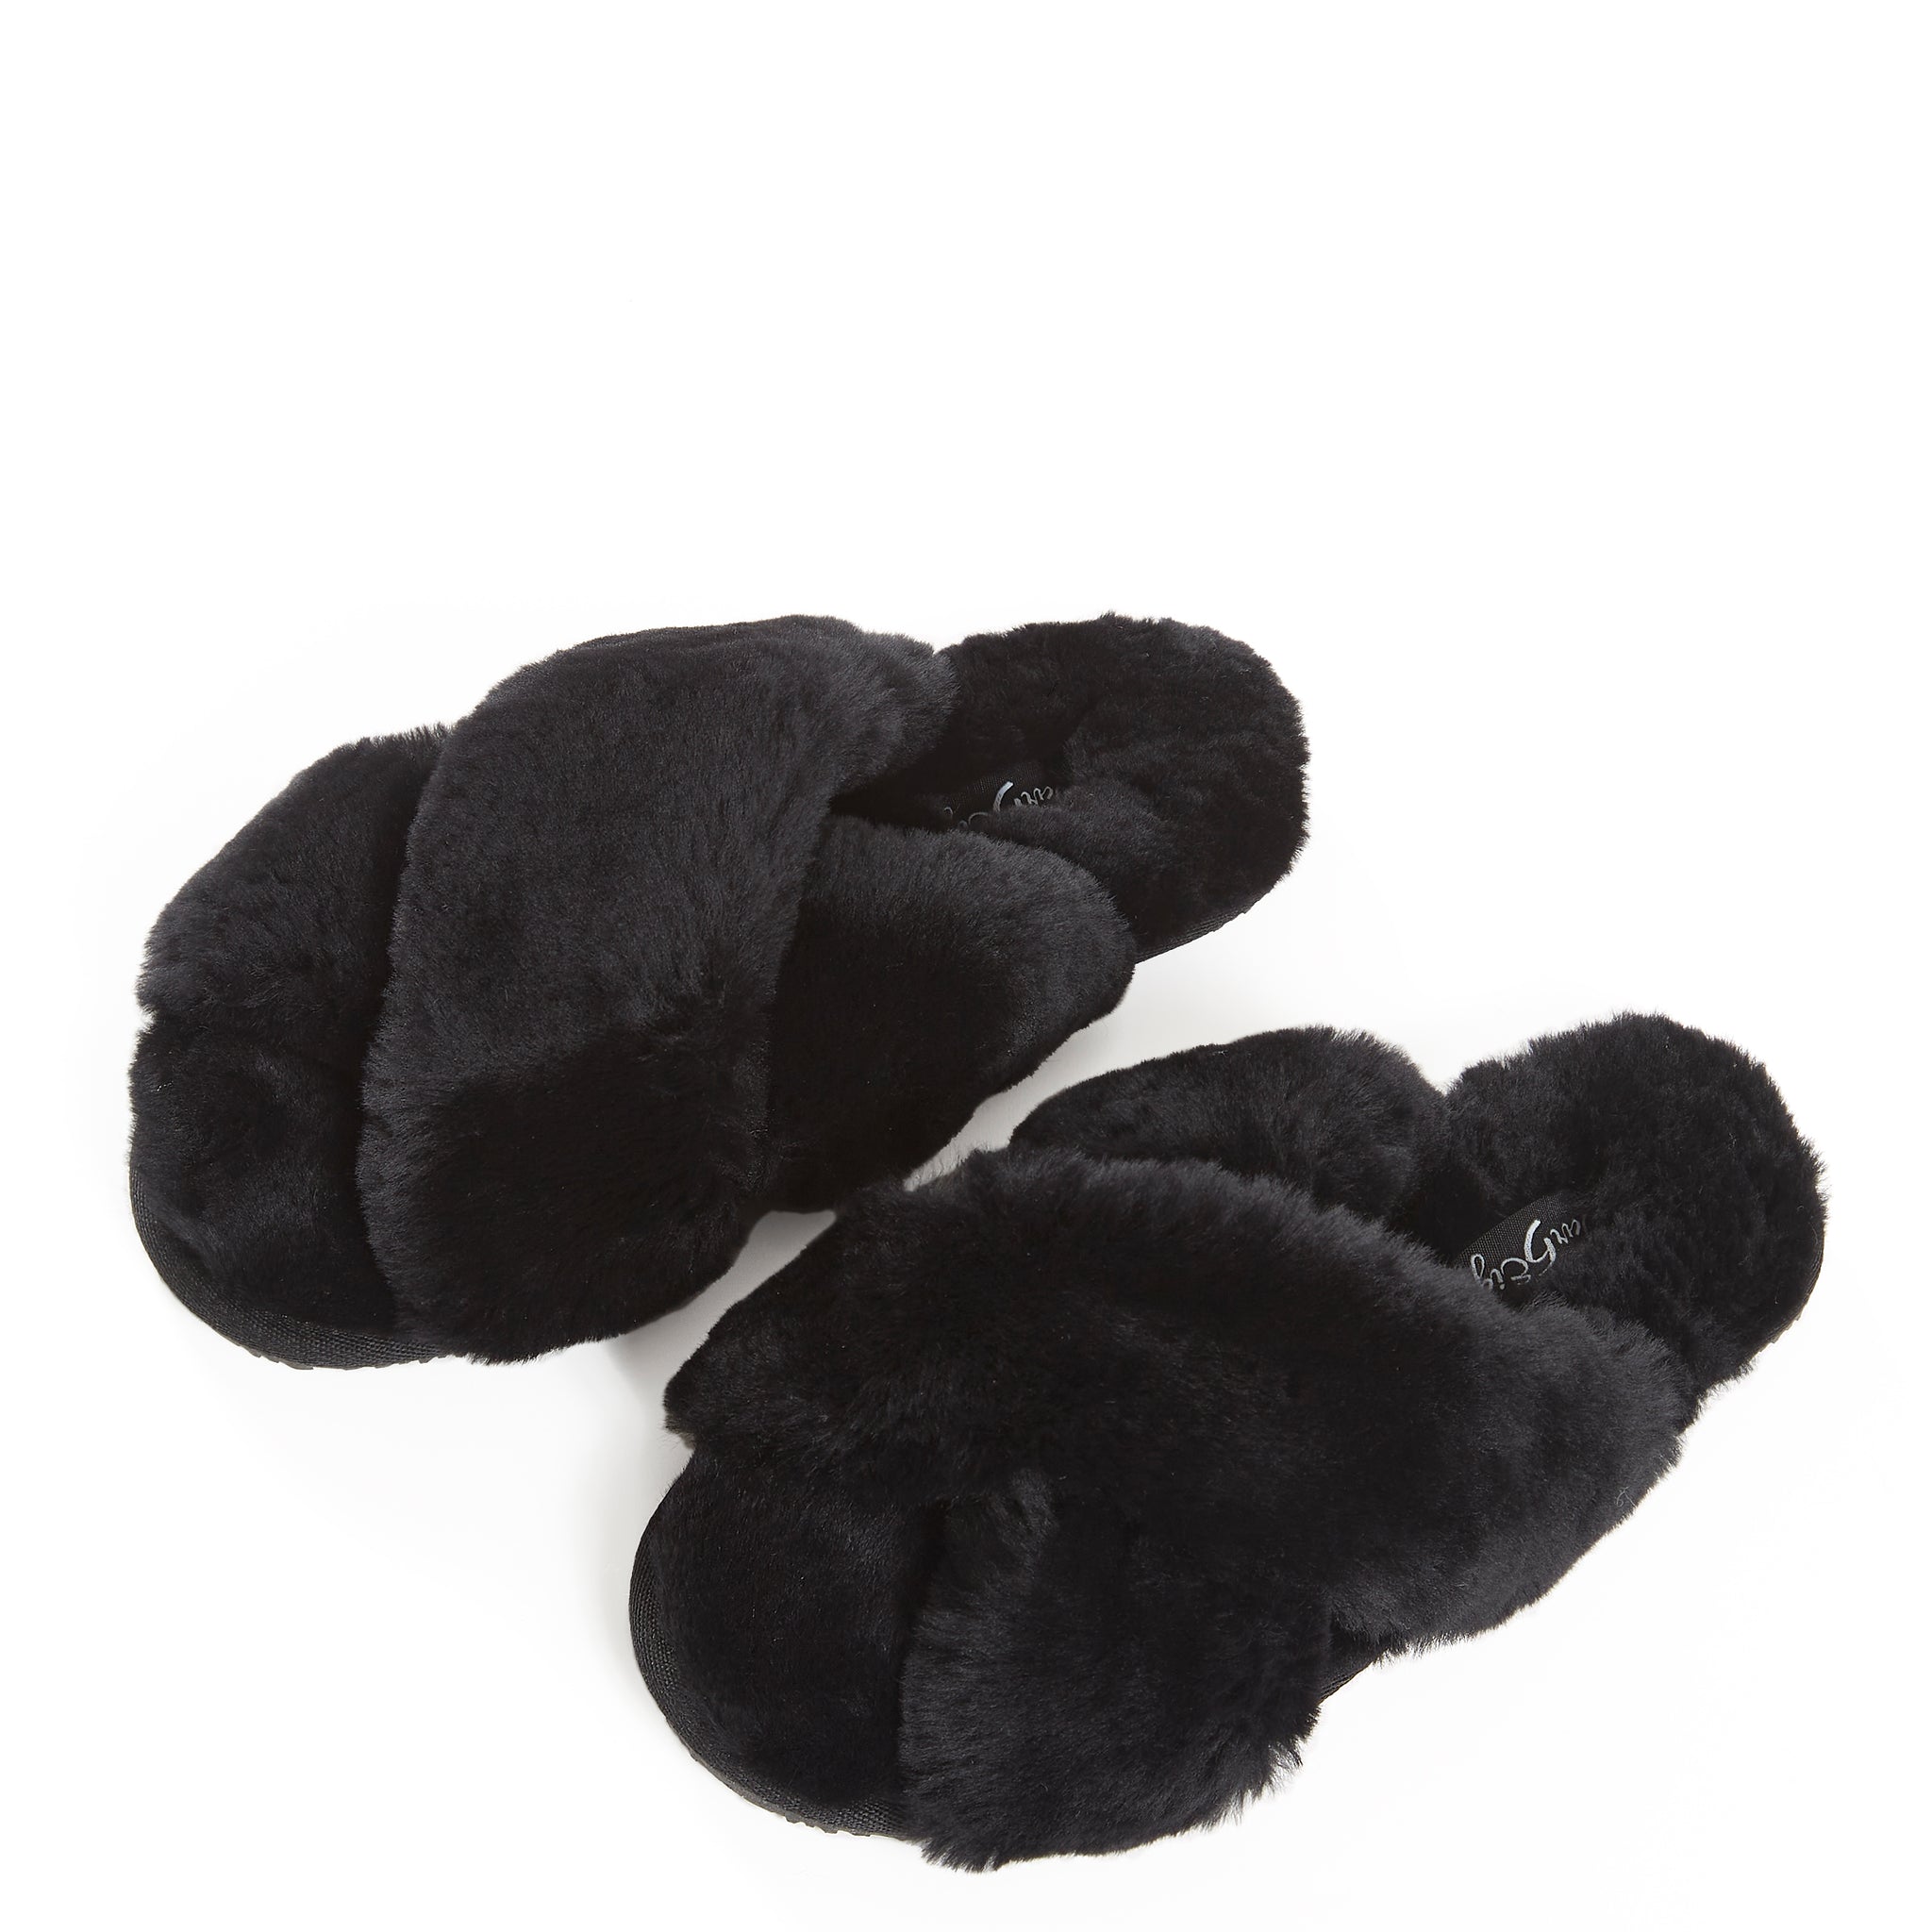 Black Criss Cross Luxury Sheepskin Slippers - Jessimara